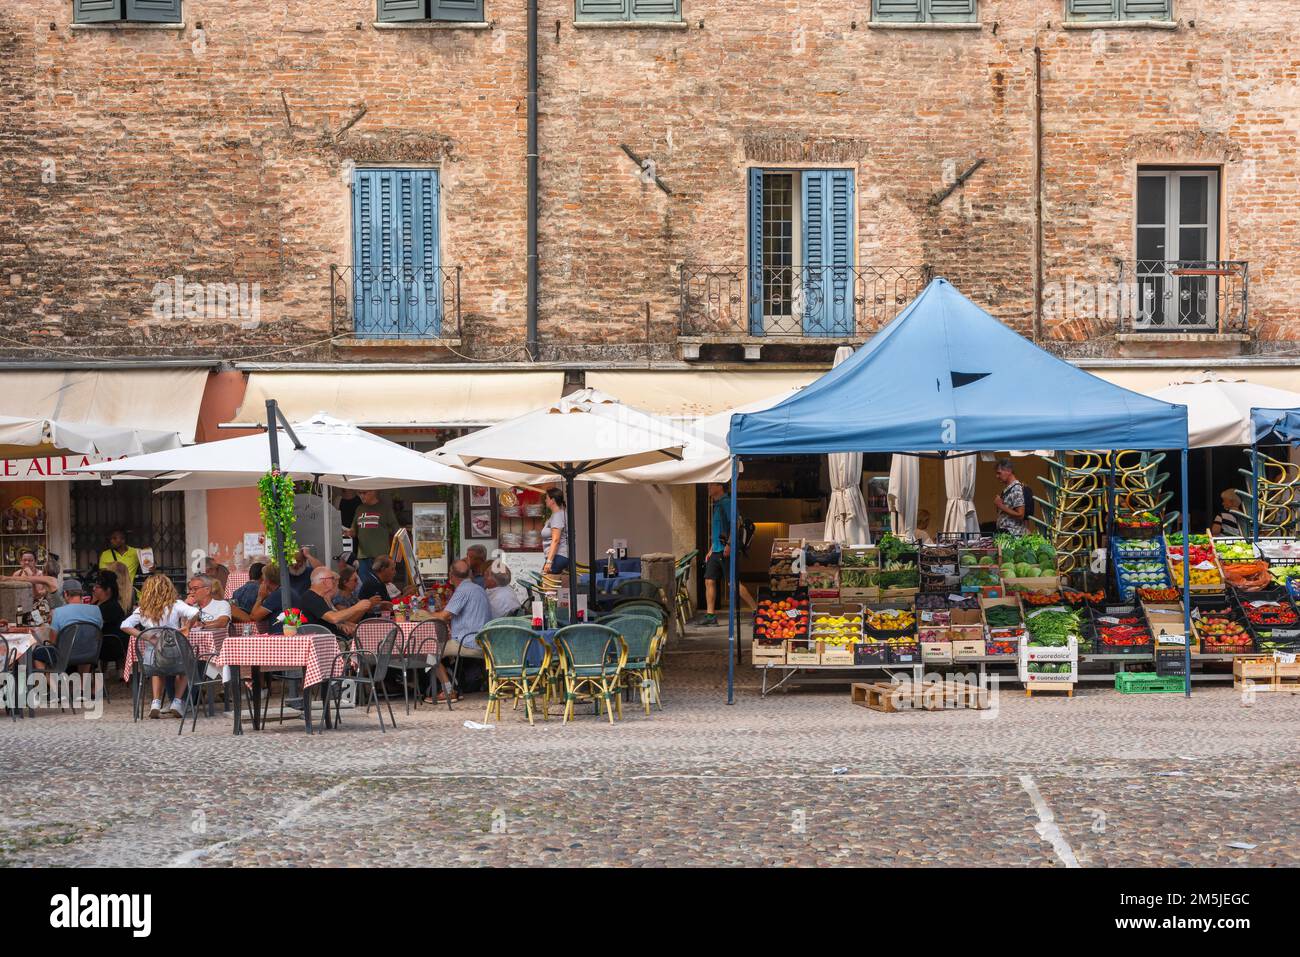 Italie rue café, vue en été des personnes assis à des tables de café dans une place pittoresque vieux marché, Piazza Sordello, Mantoue (Mantova), Lombardie, Italie Banque D'Images